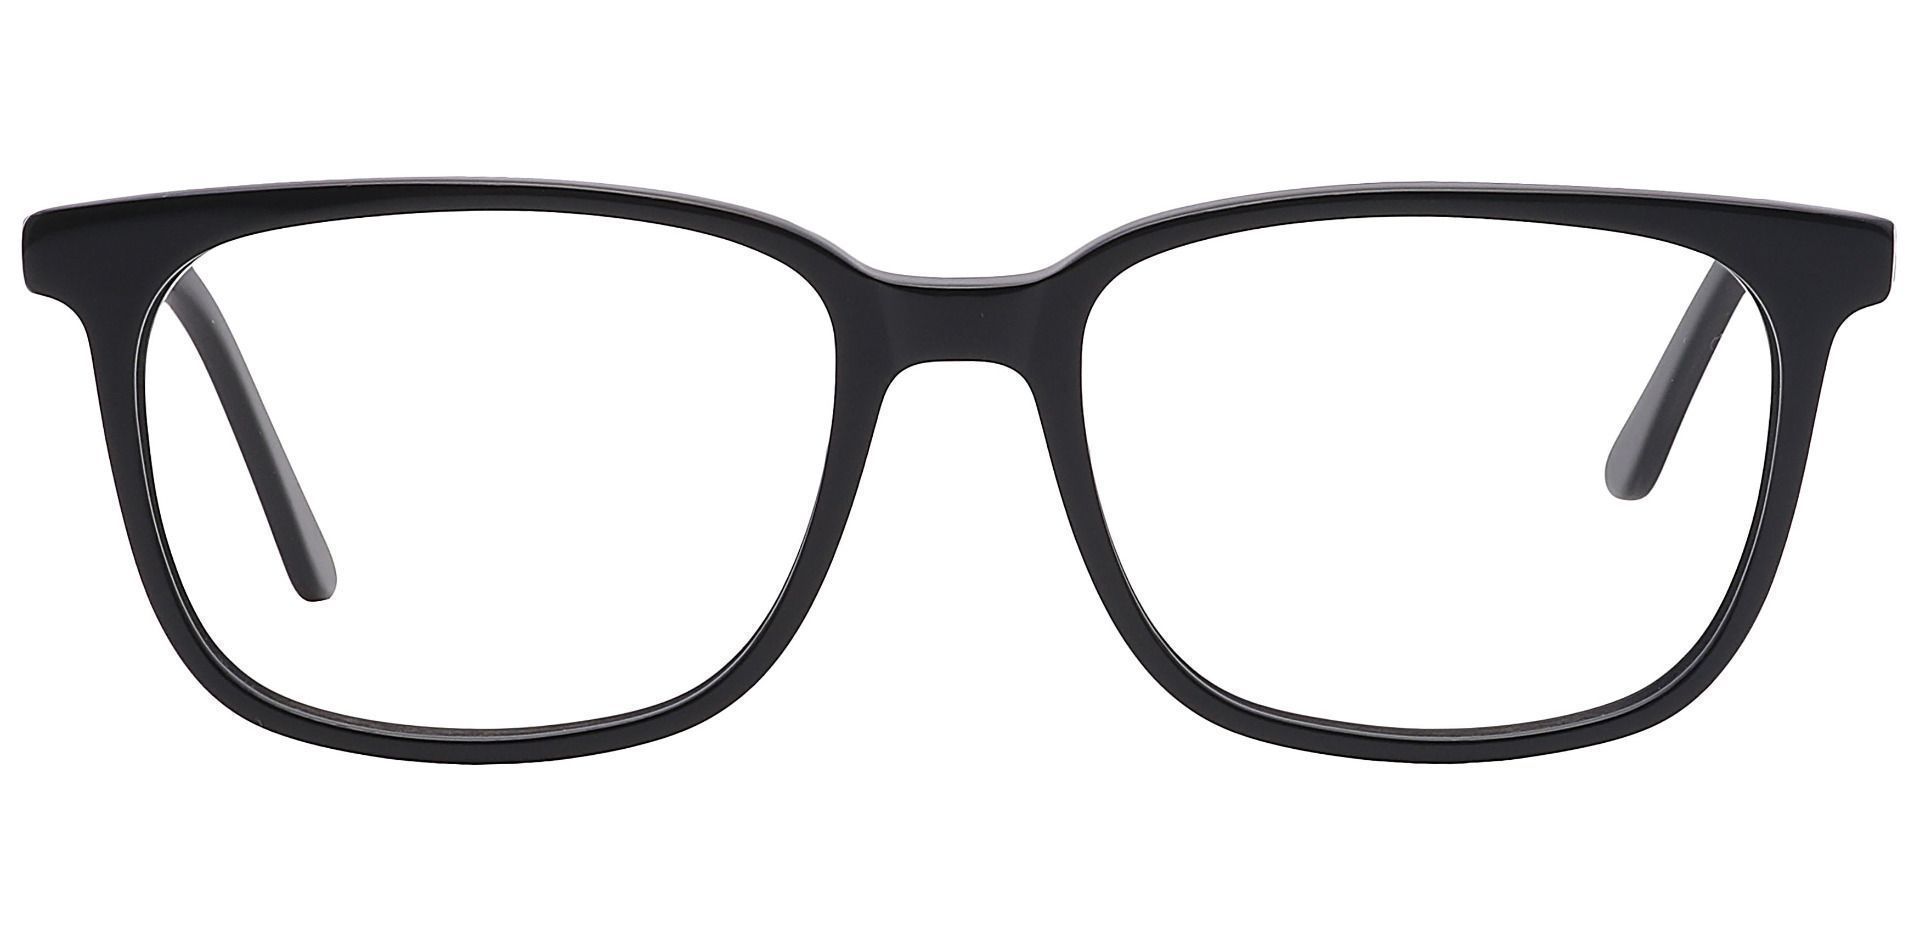 Fern Square Non-Rx Glasses - Black